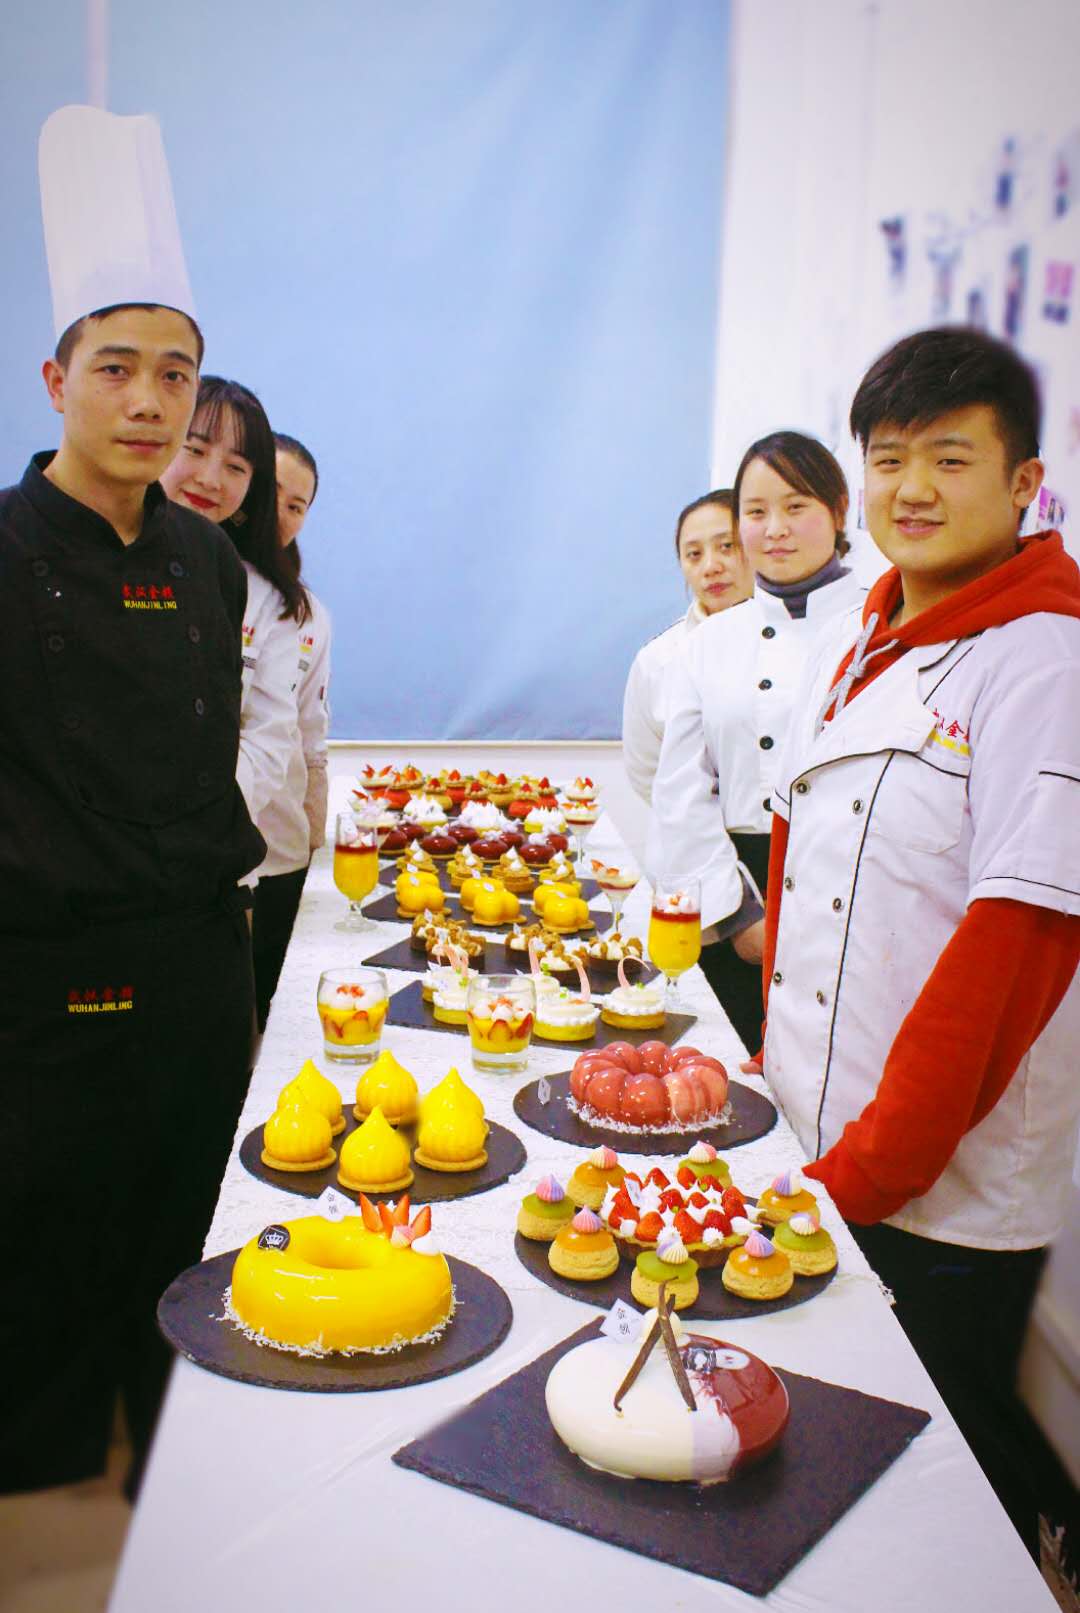 武汉蛋糕培训专业西点蛋糕制作找武 武汉蛋糕培训金领专业西点蛋糕制作